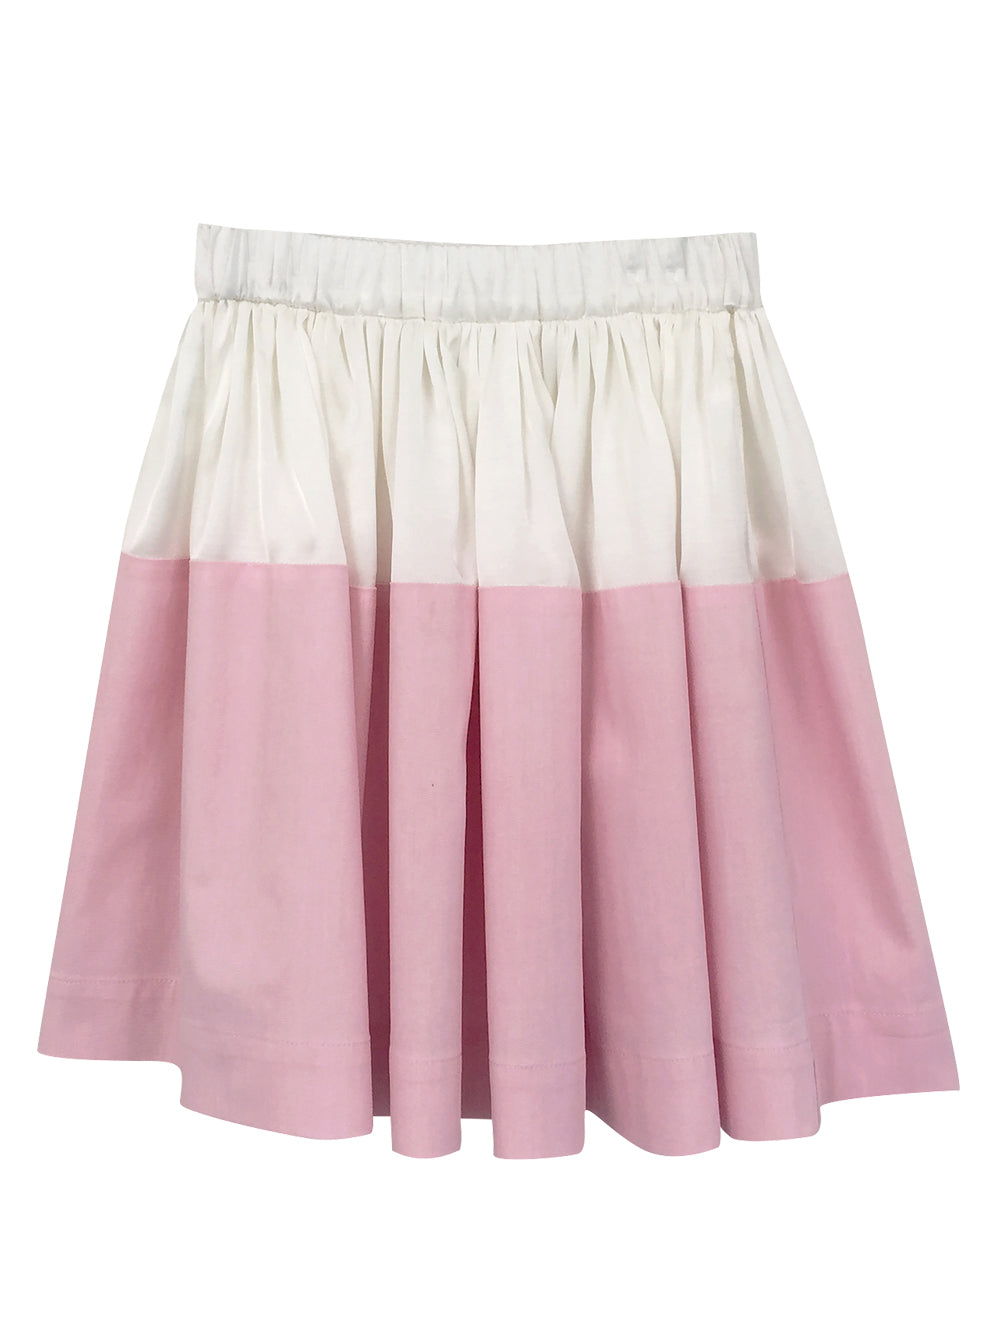 Tilda Blossom Skirt